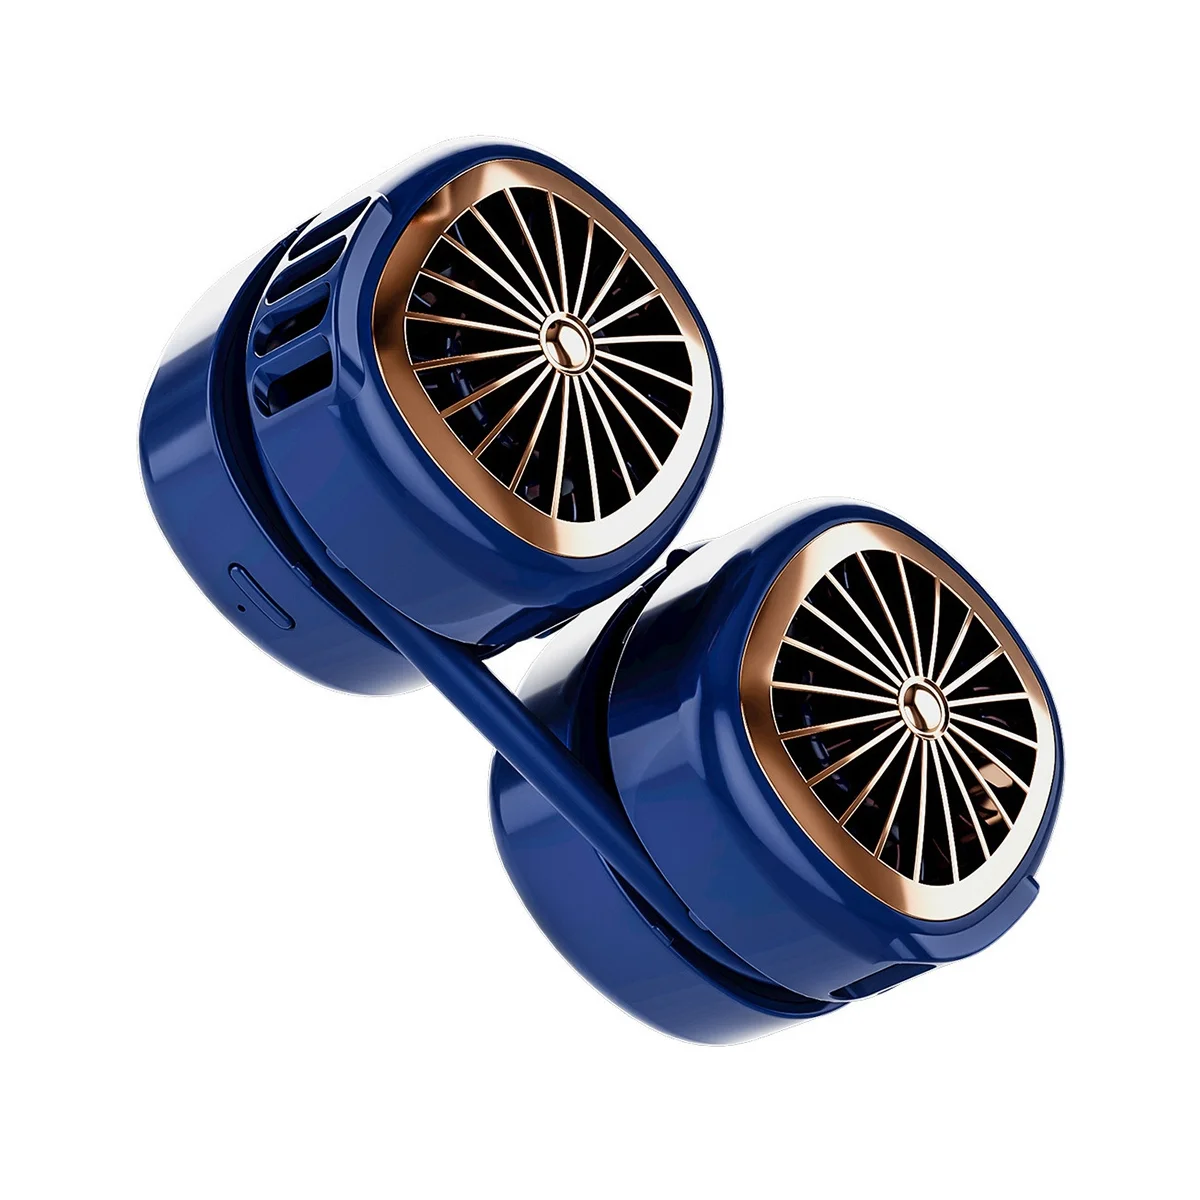 Подвесной Шейный вентилятор Складной Новый продукт Удобный Карман для хранения, Безлистный Портативный вентилятор для спорта на открытом воздухе, Немой Синий